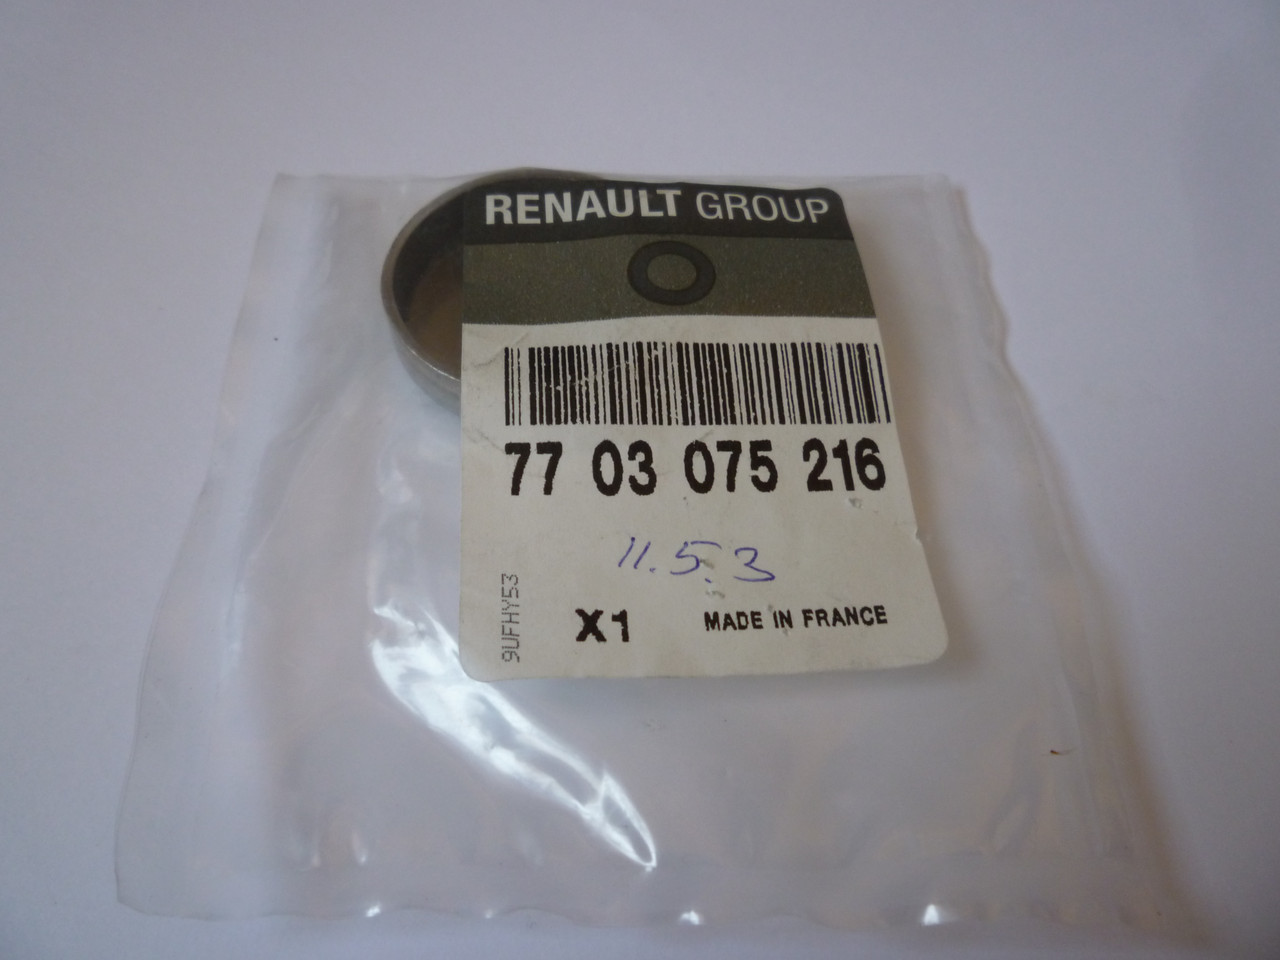 Uszczelnienie przeciwmrozowe Renault 77 03 075 216